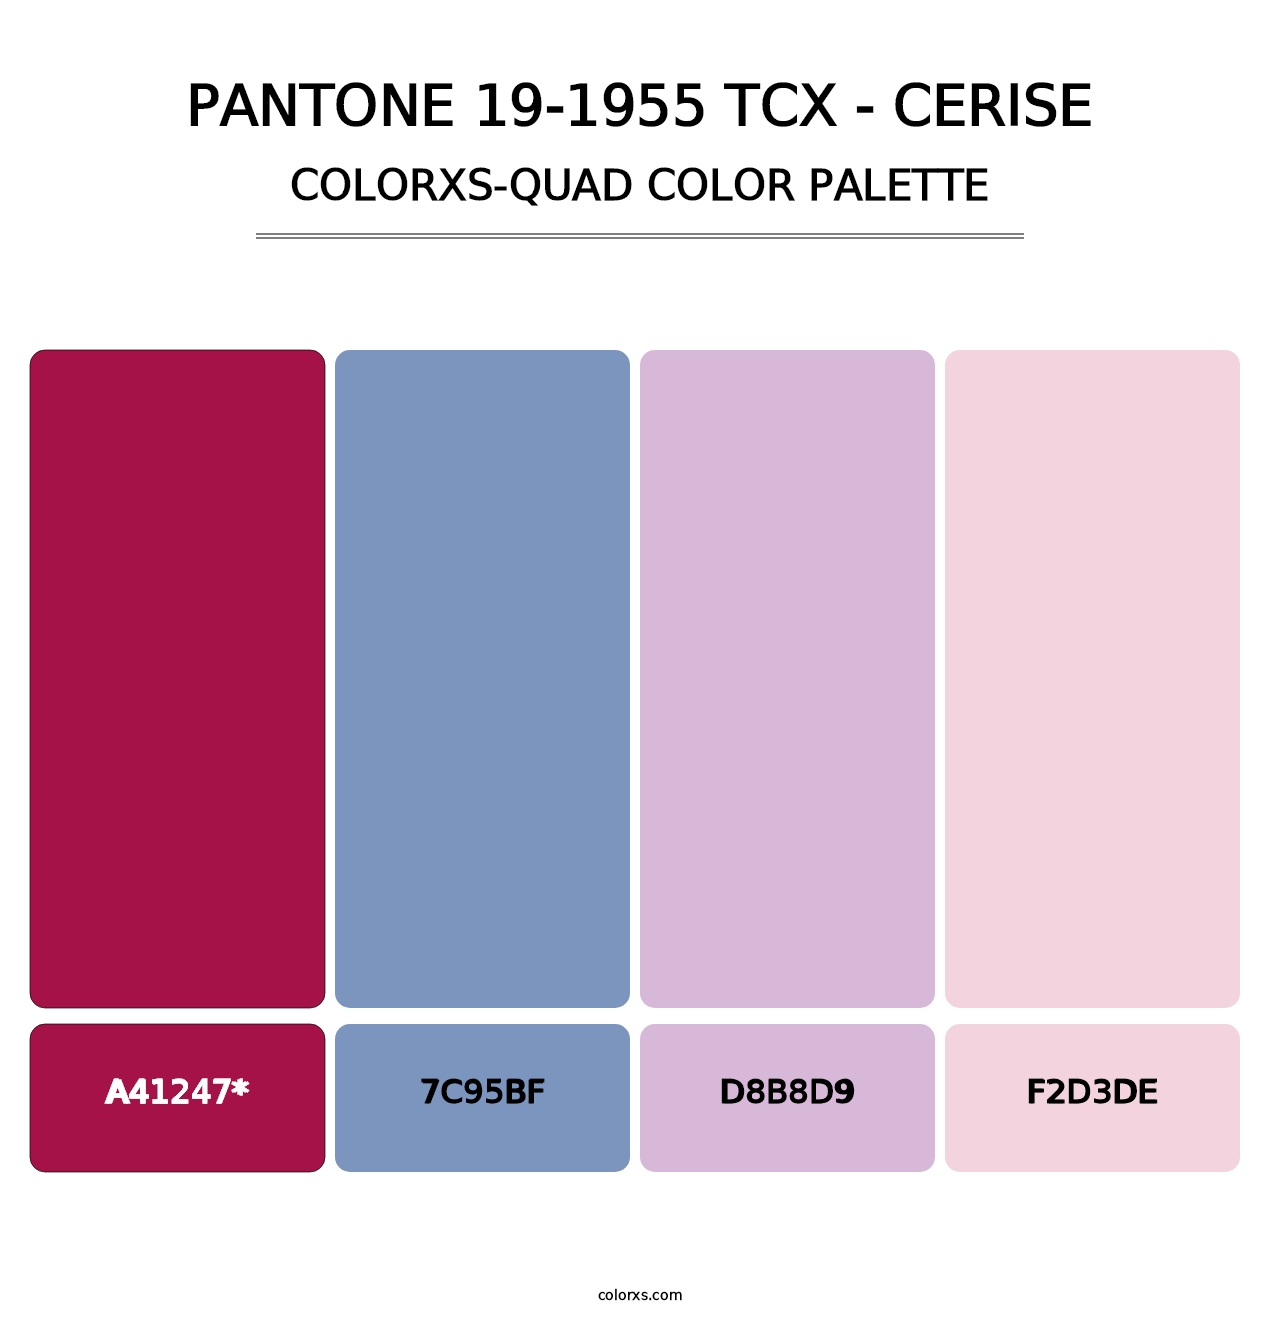 PANTONE 19-1955 TCX - Cerise - Colorxs Quad Palette